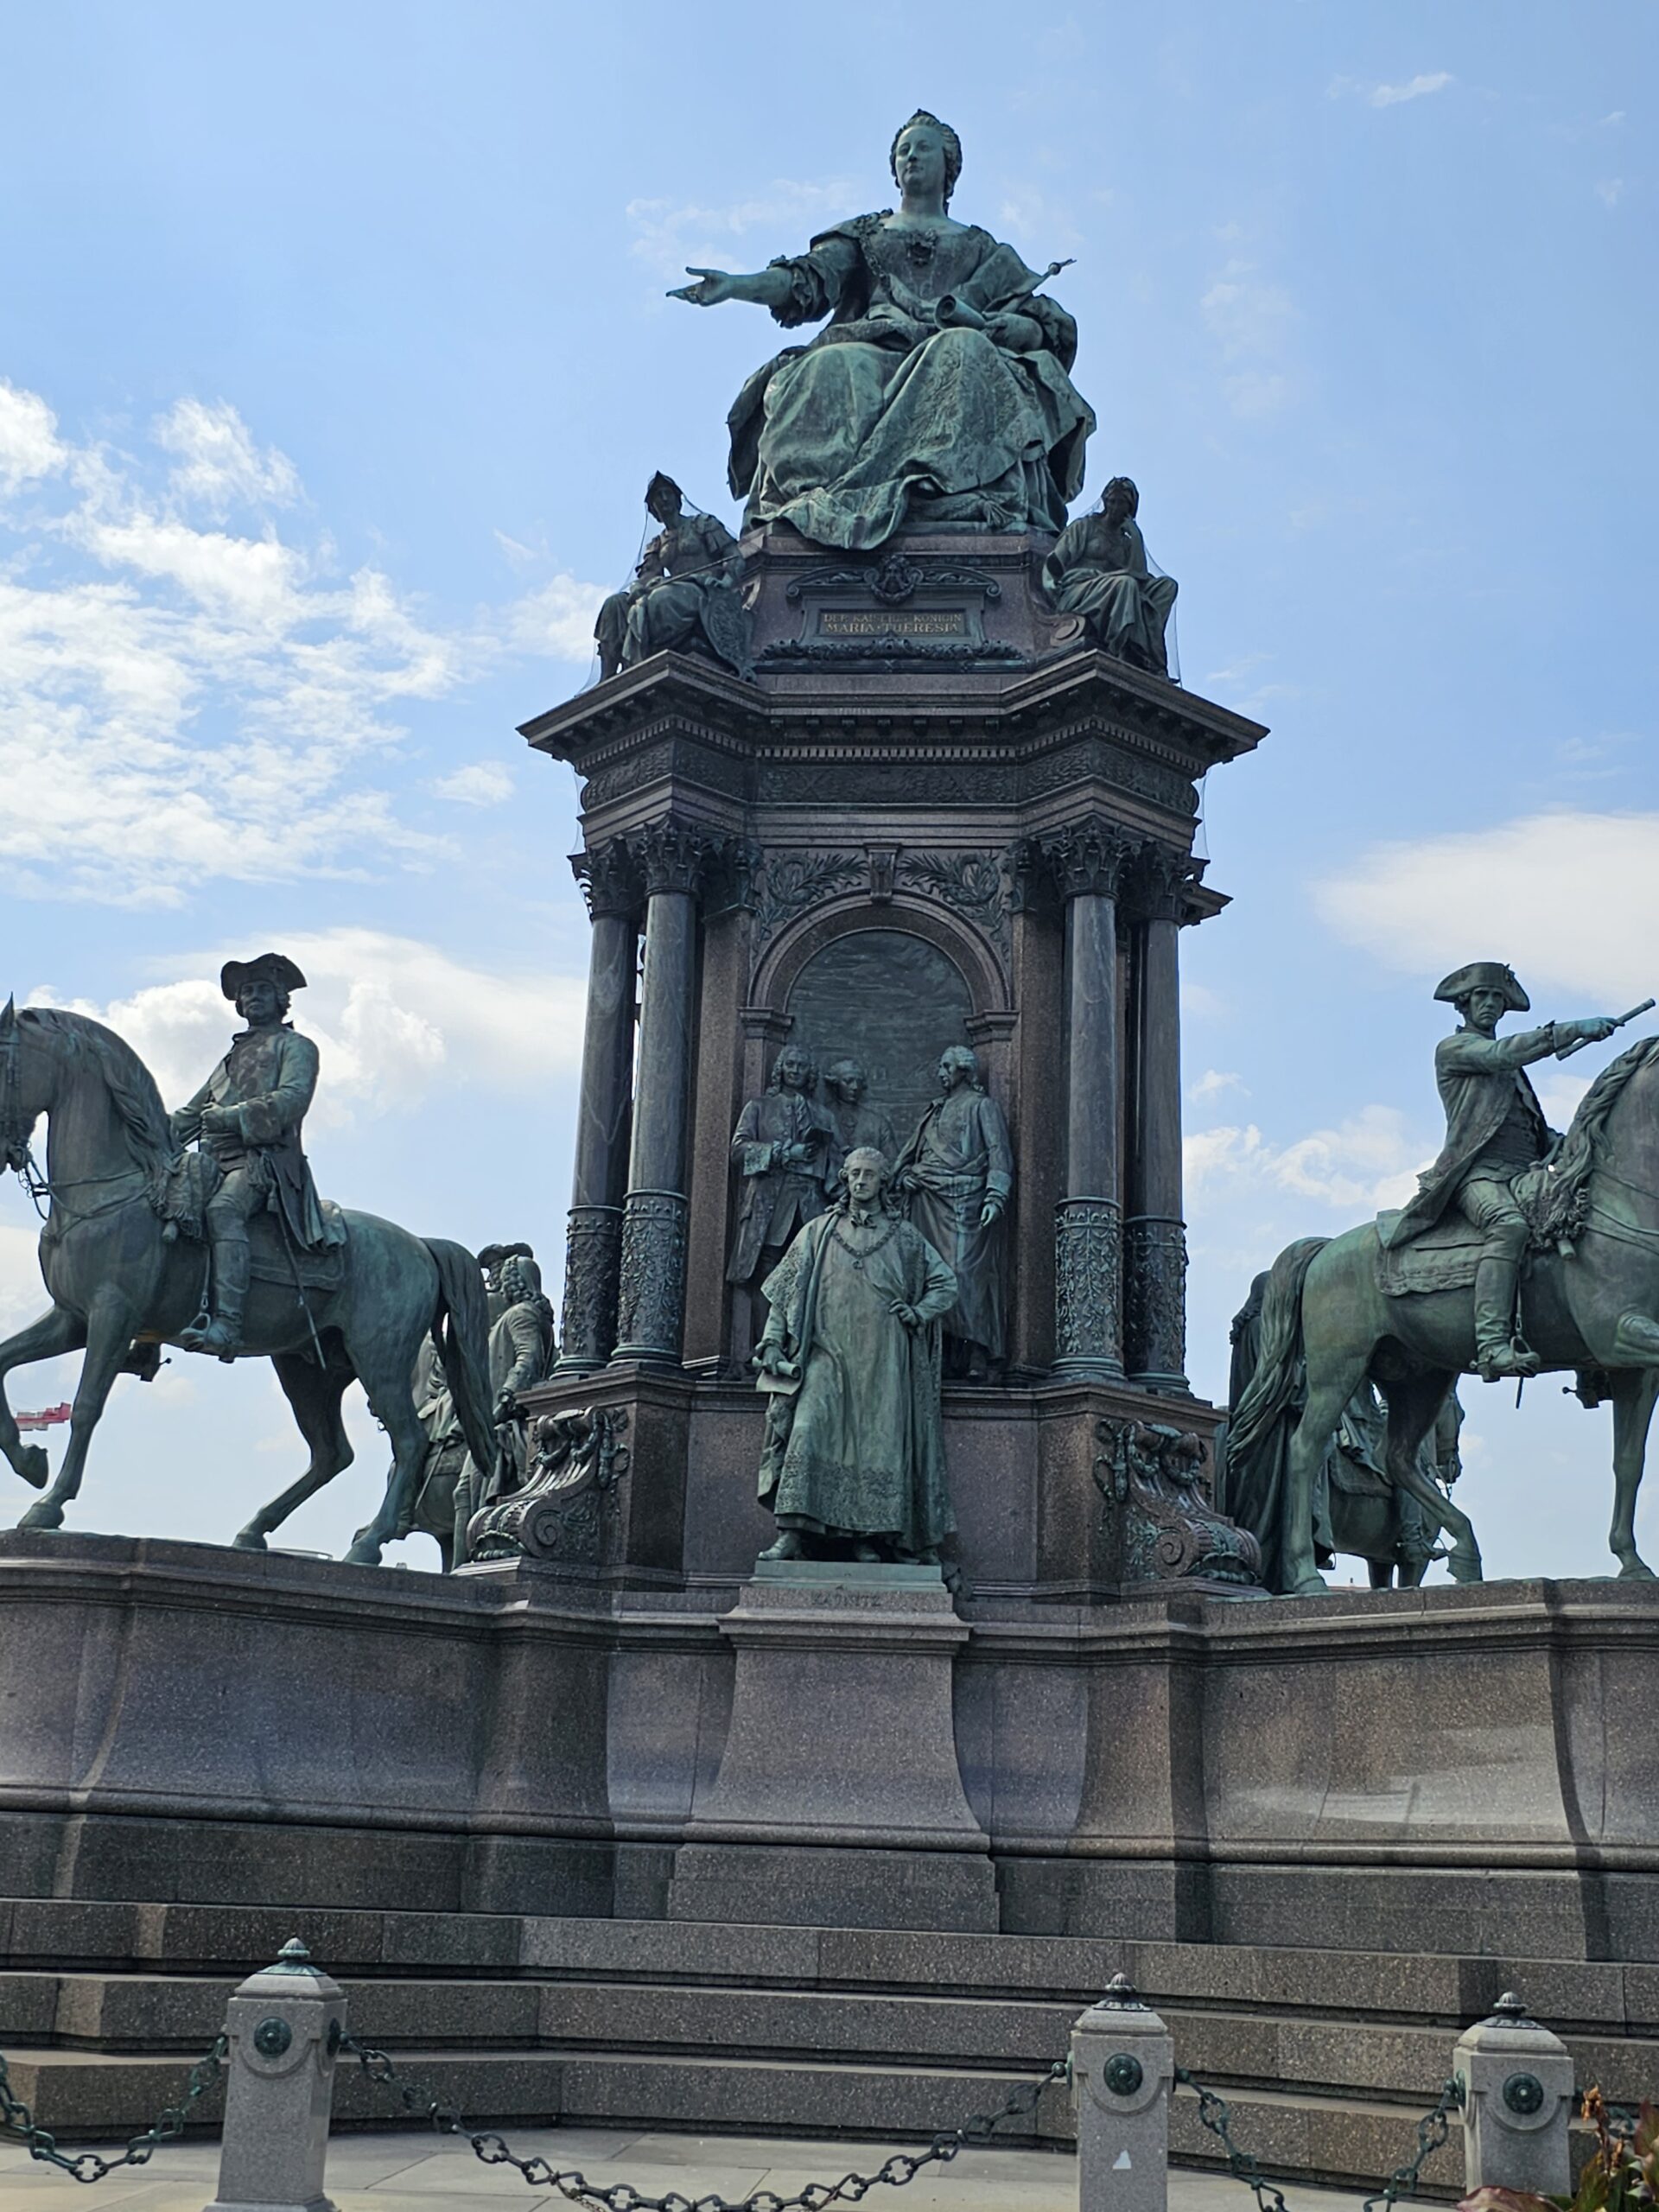 Maria Theresa Memorial at Maria-Theresien-Platz, Vienna.